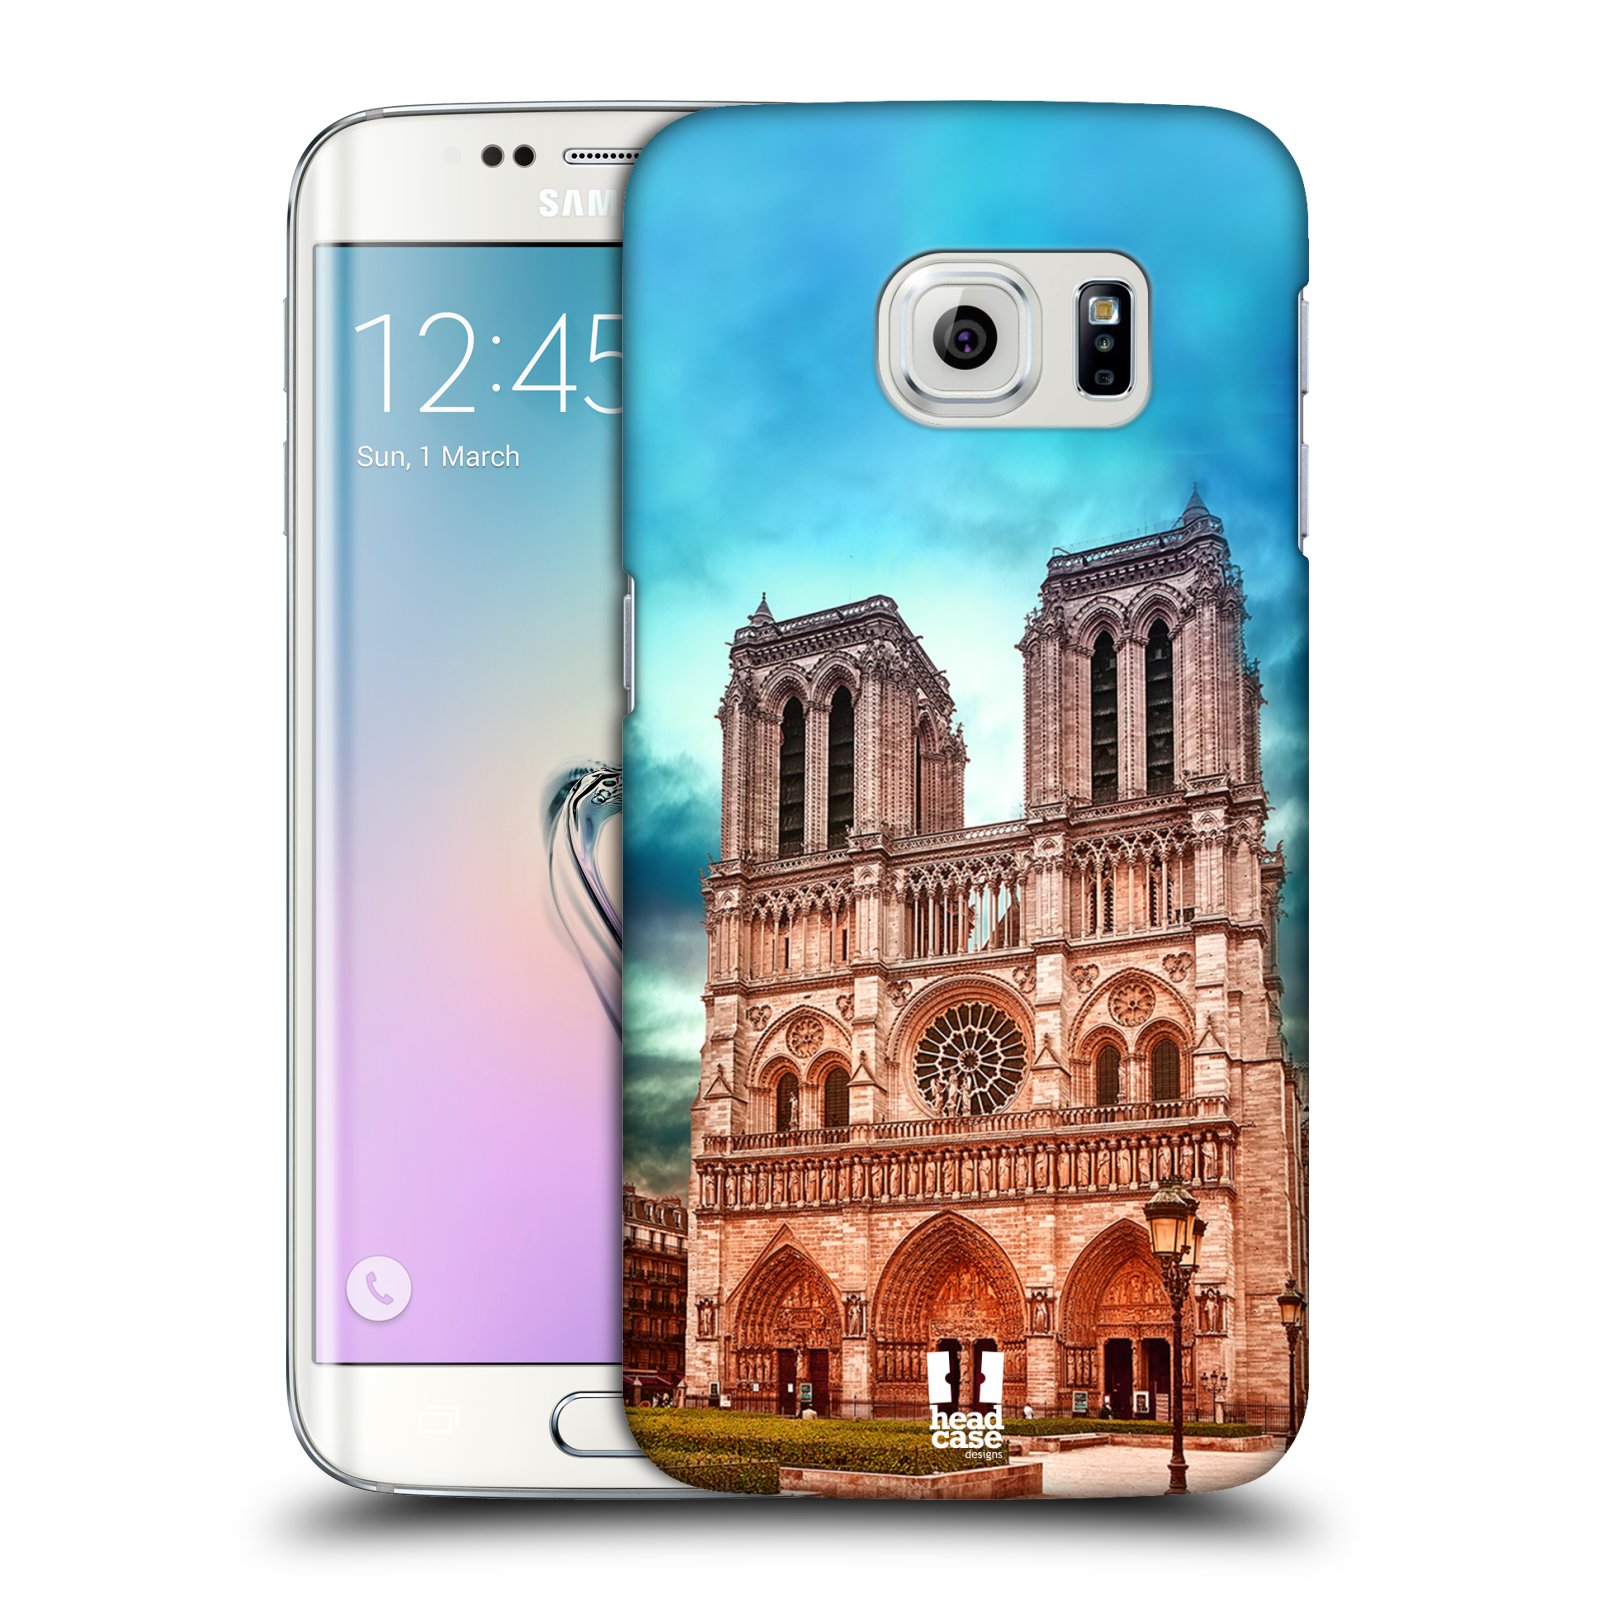 Pouzdro na mobil Samsung Galaxy S6 EDGE - HEAD CASE - historická místa katedrála Notre Dame